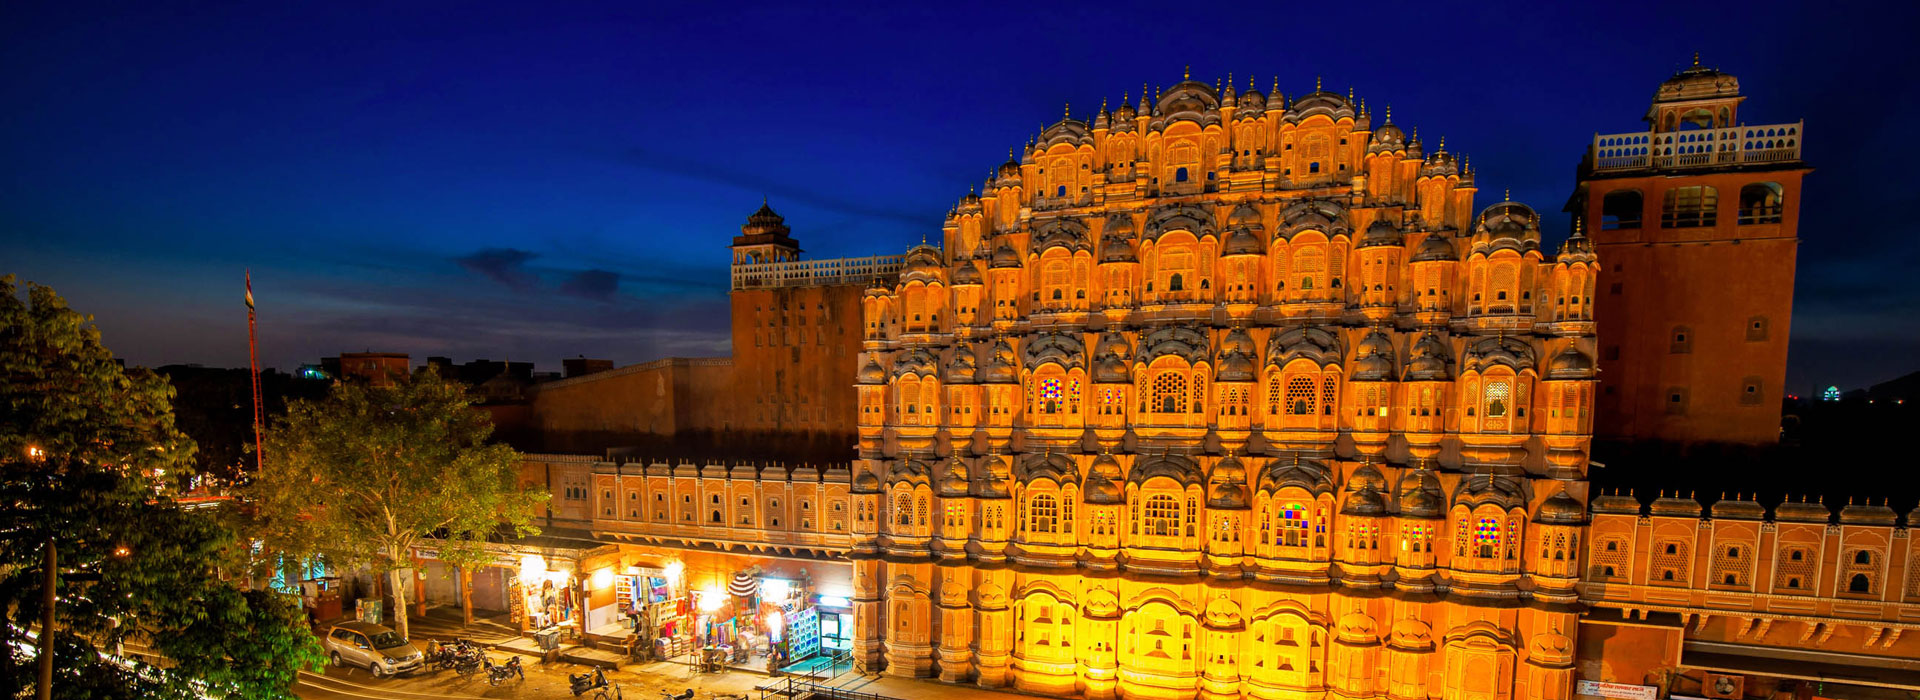 Delhi, Agra, Jaipur Tour by Car-3N4D